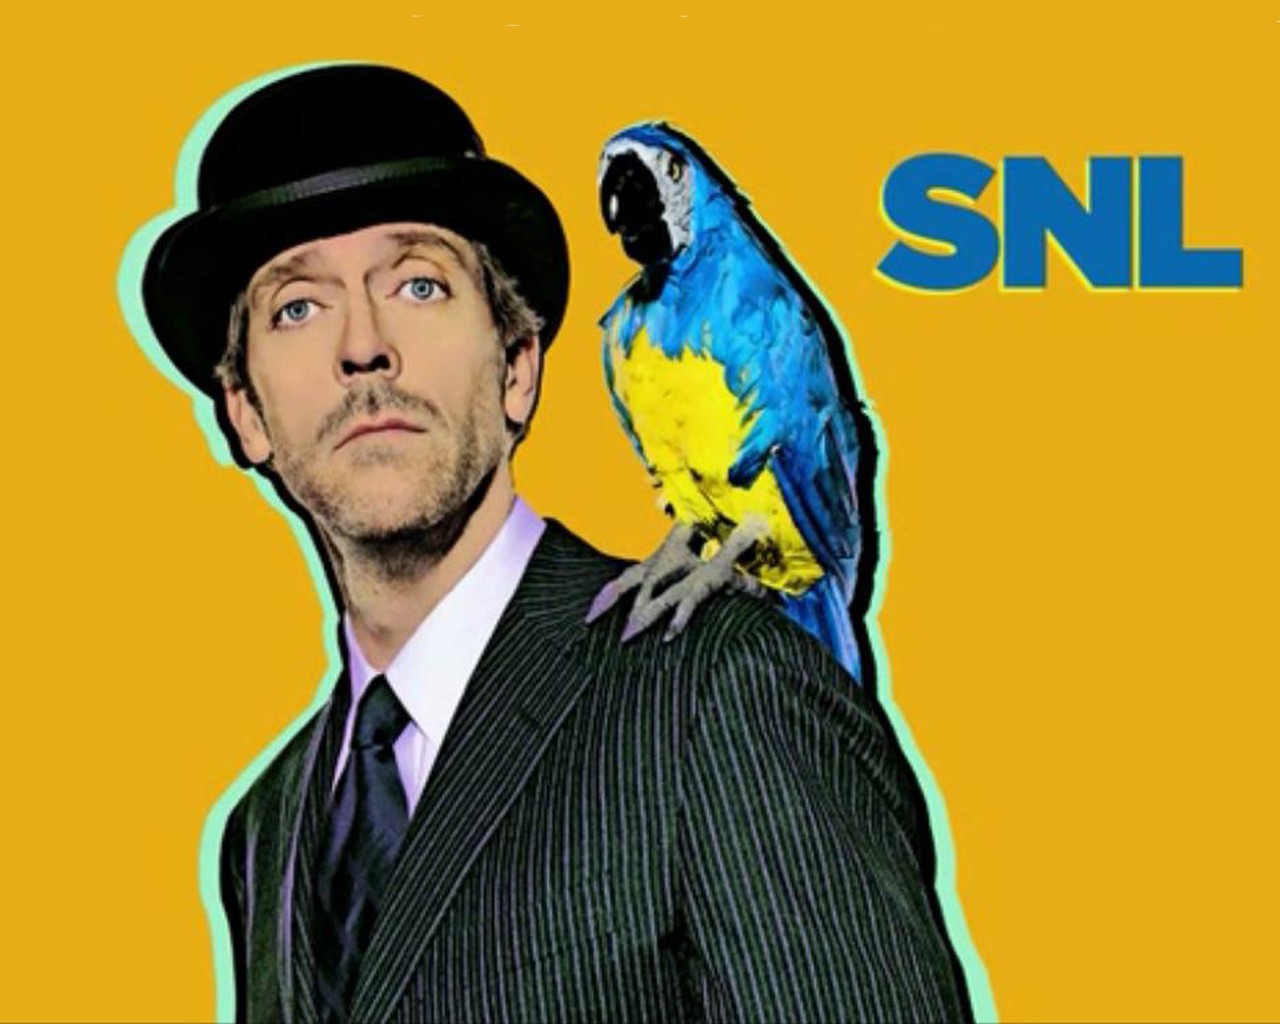 General 1280x1024 simple background tie hat parrot animals SNL men yellow background actor Hugh Laurie birds